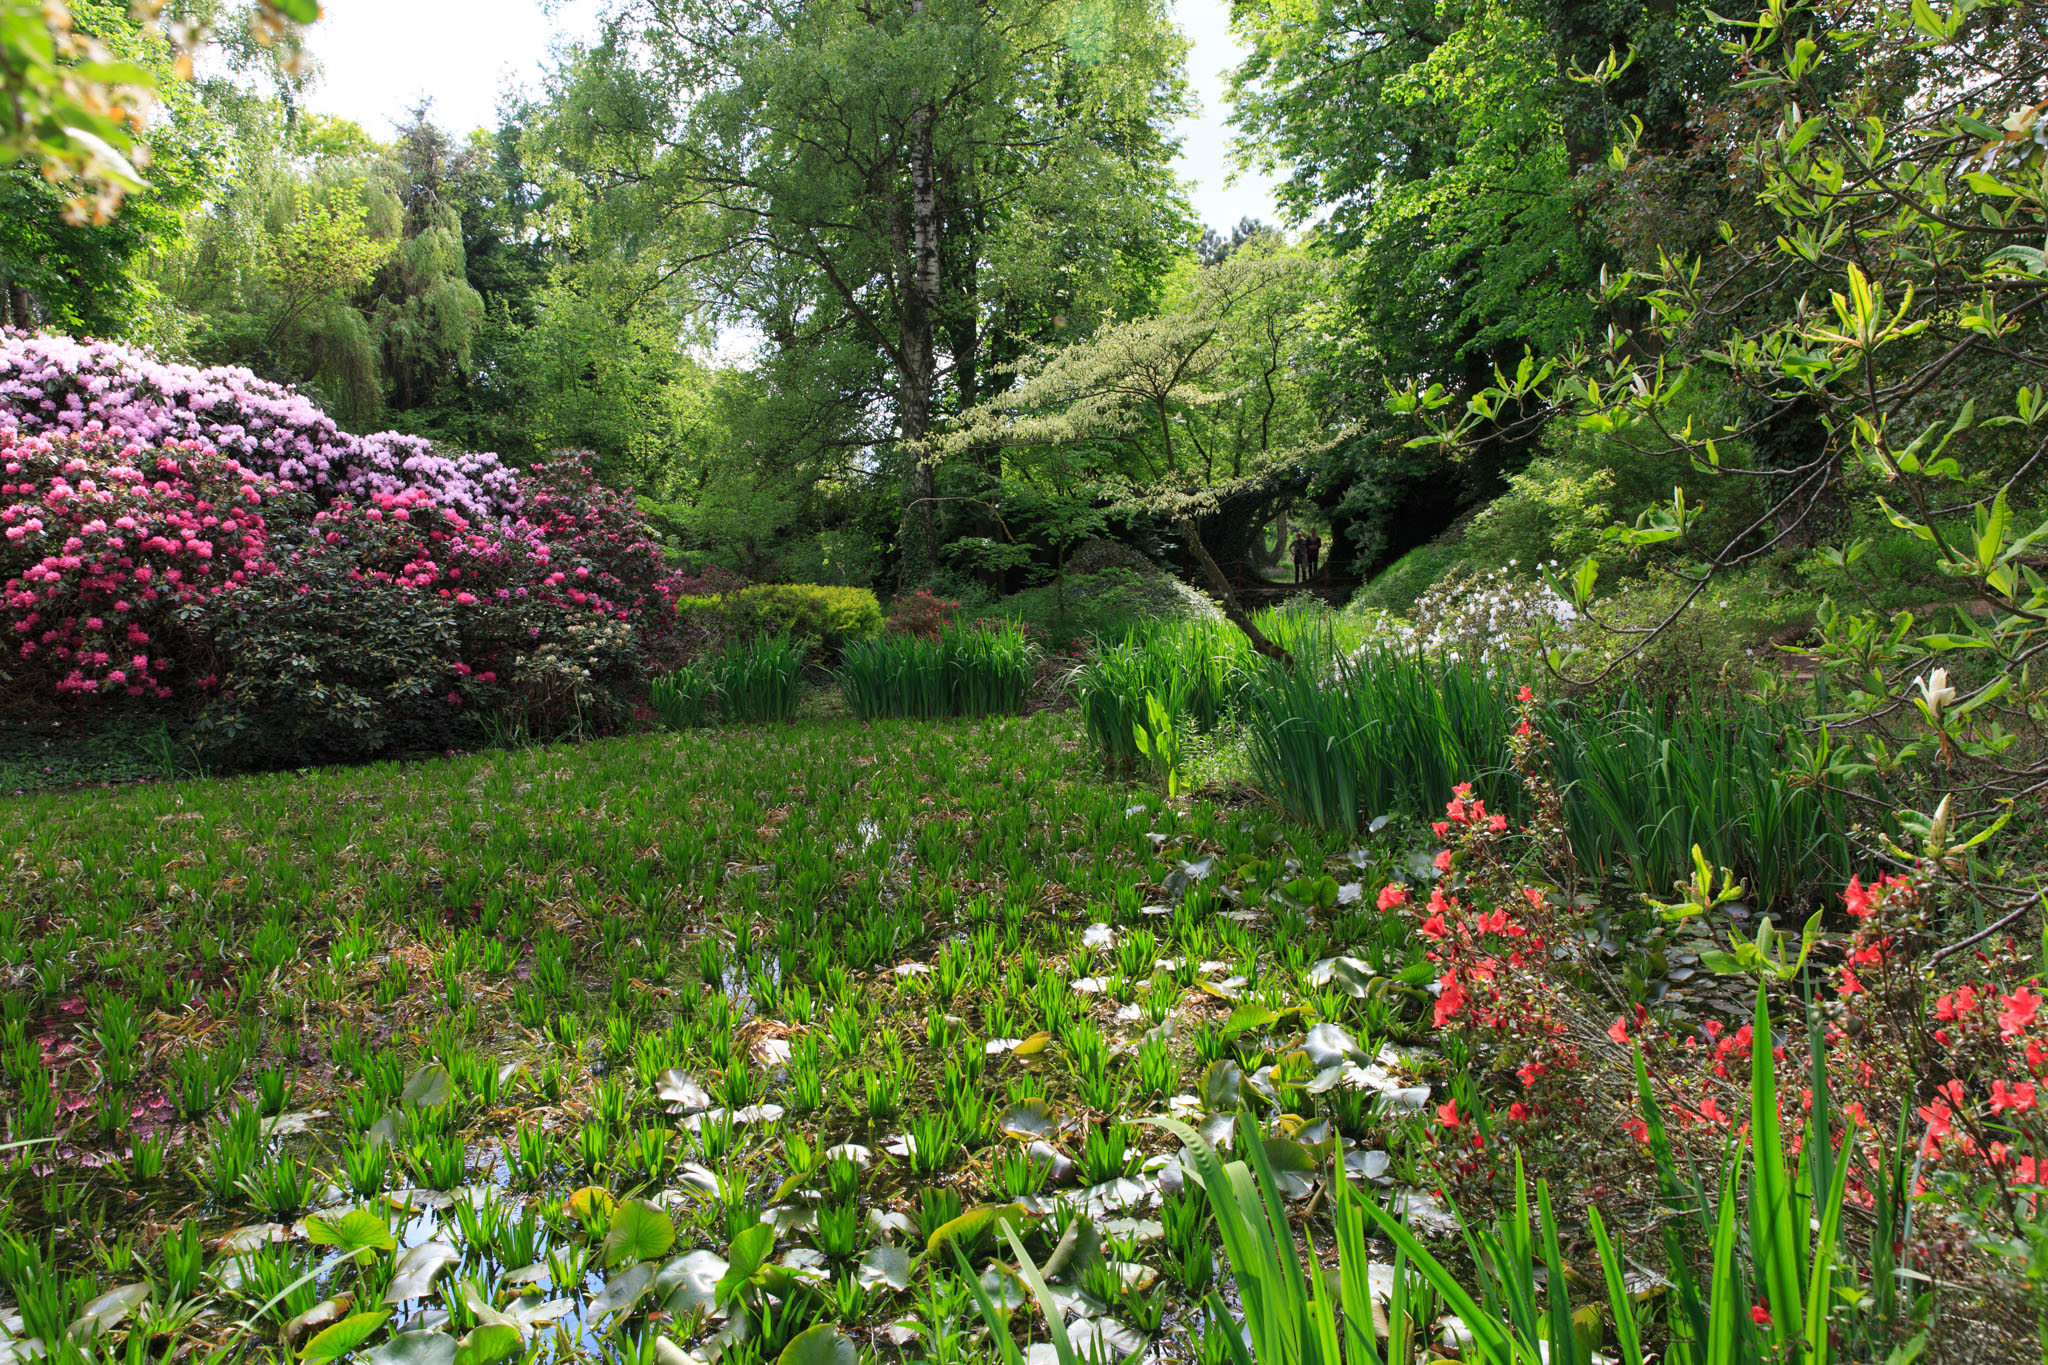 Rhododendron am Teich mit dem runden Tor.